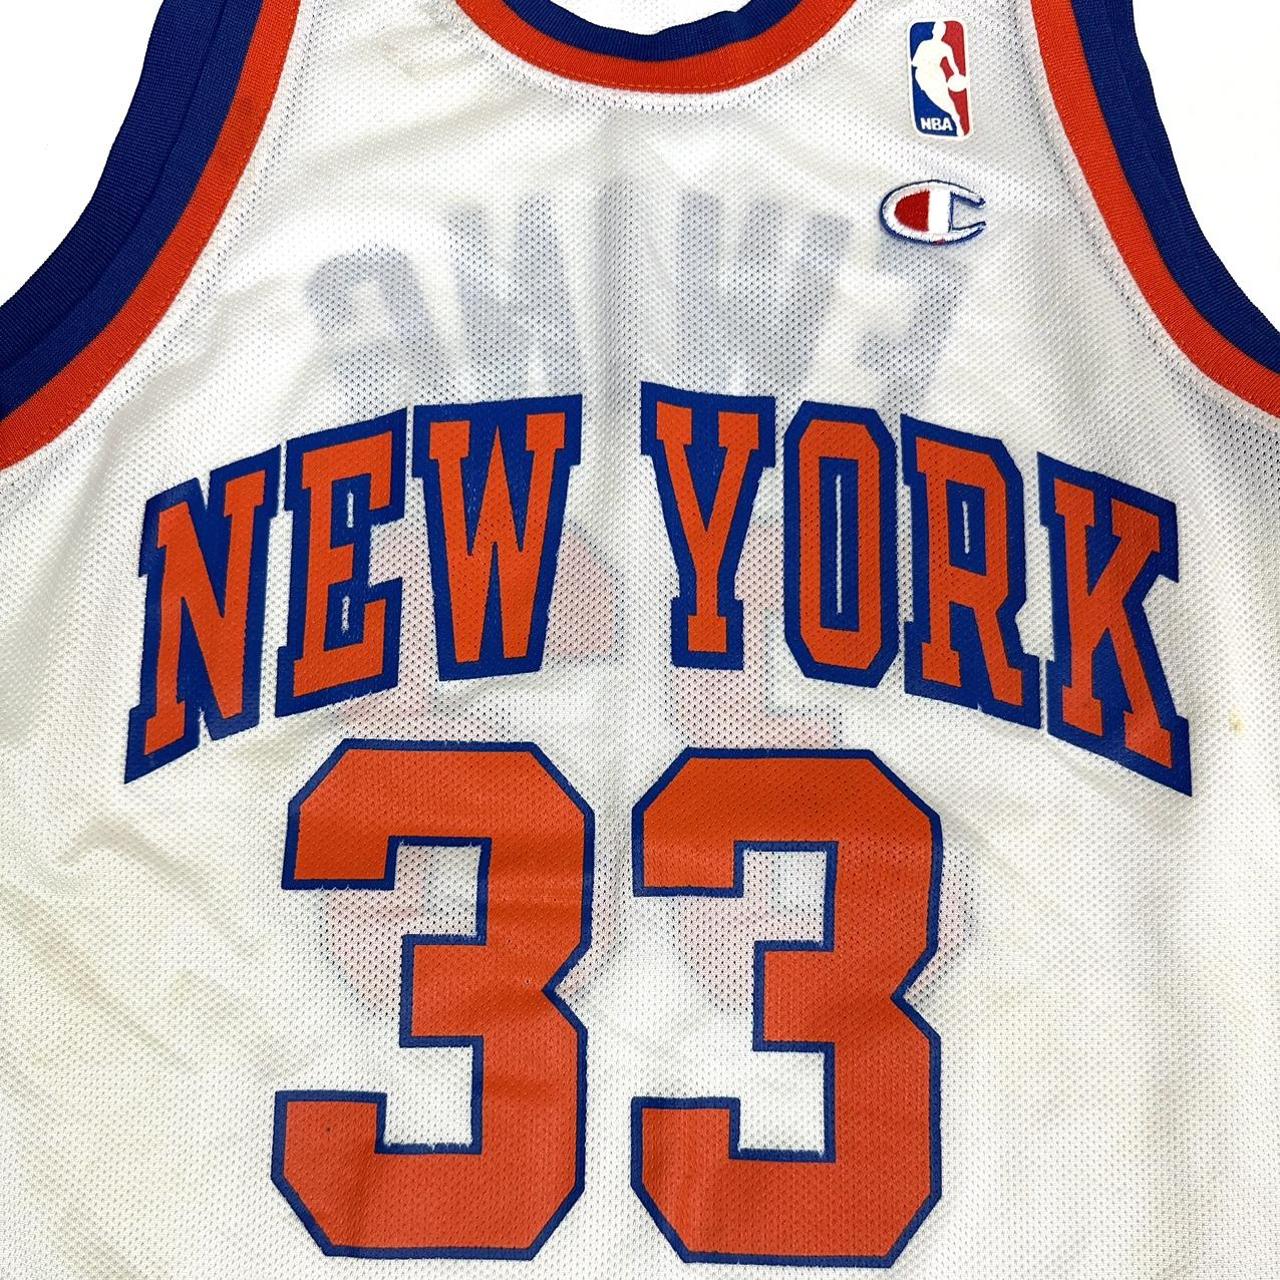 NBA NEW YORK KNICKS BASKETBALL SHIRT JERSEY CHAMPION #33 PATRICK EWING